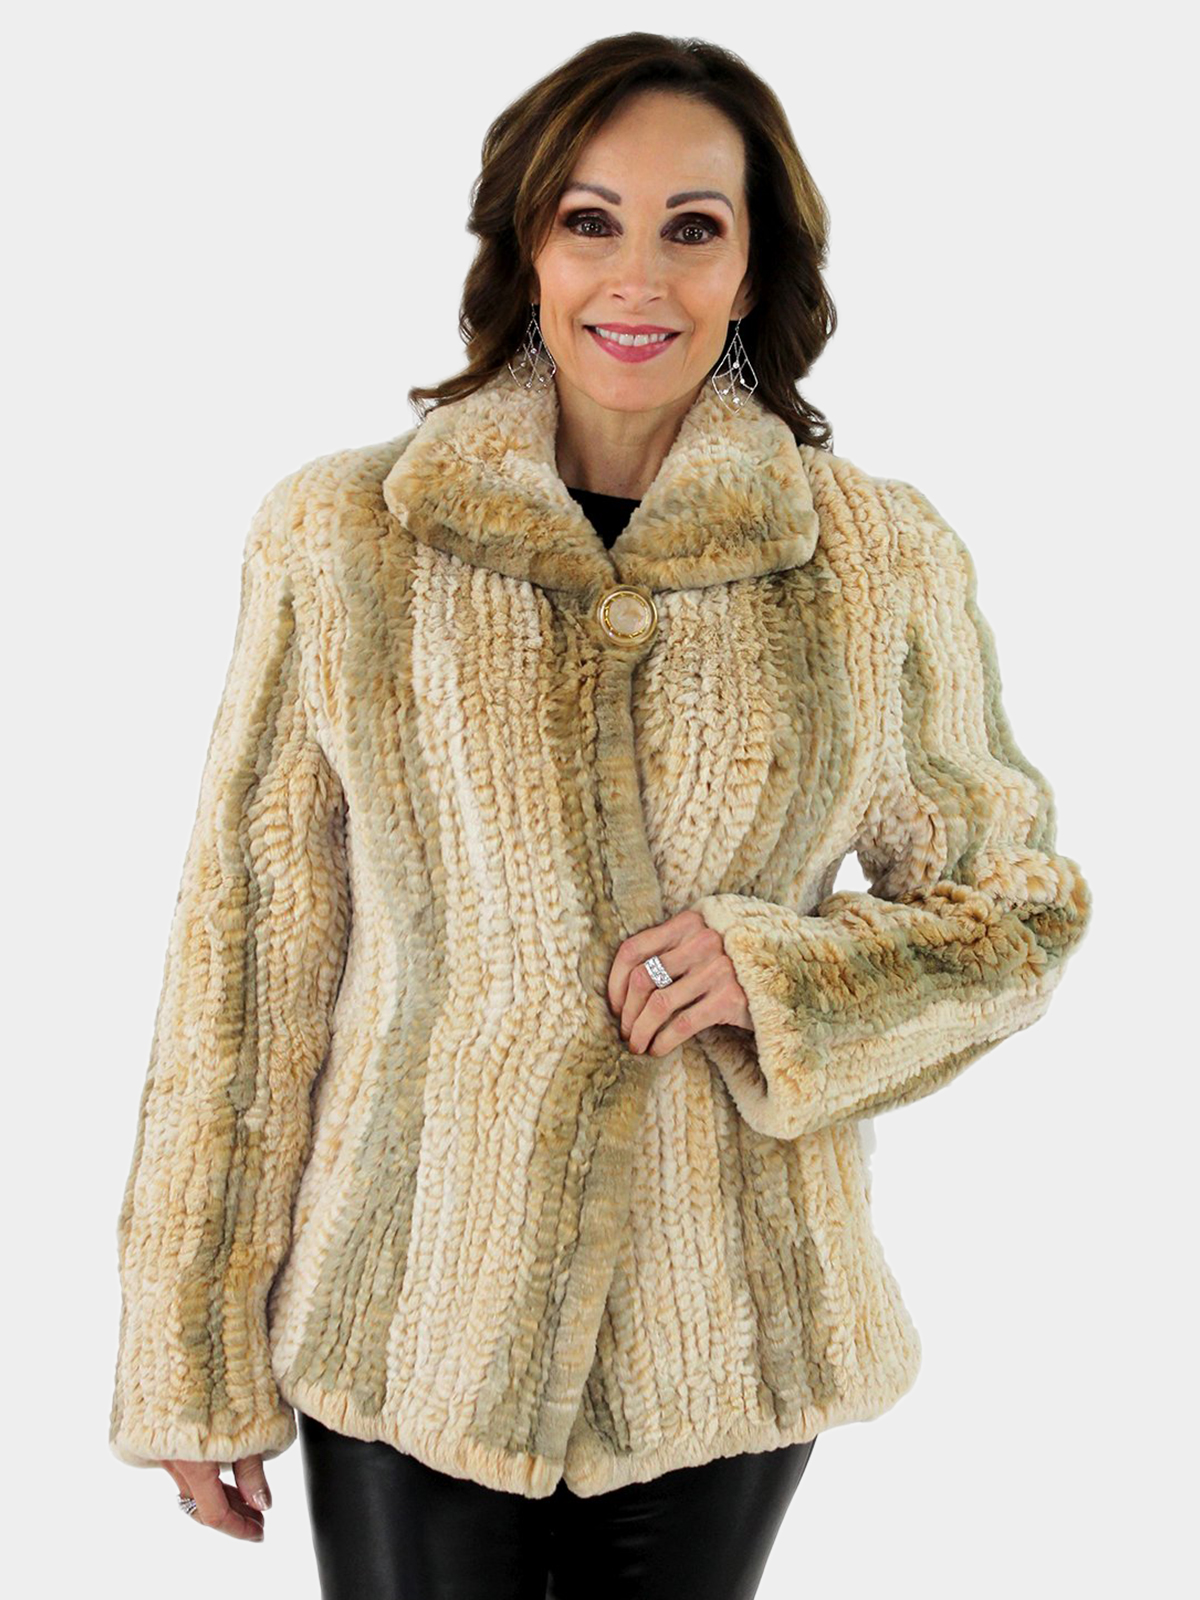 Woman's Camel Rex Rabbit Fur Woven Jacket